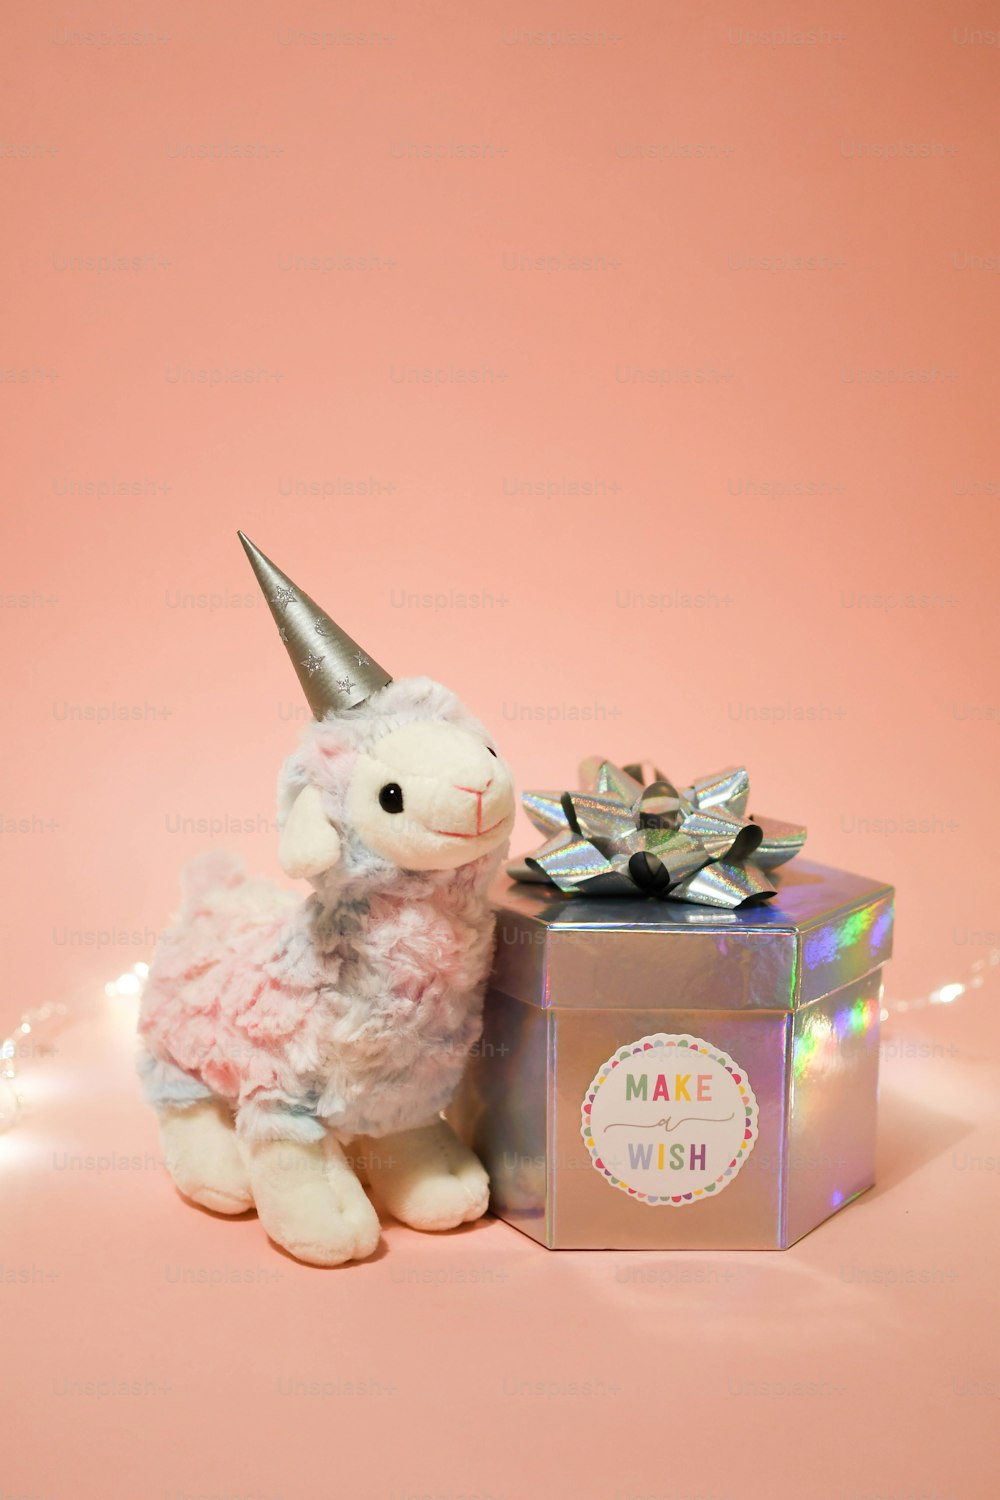 a stuffed animal sitting next to a gift box